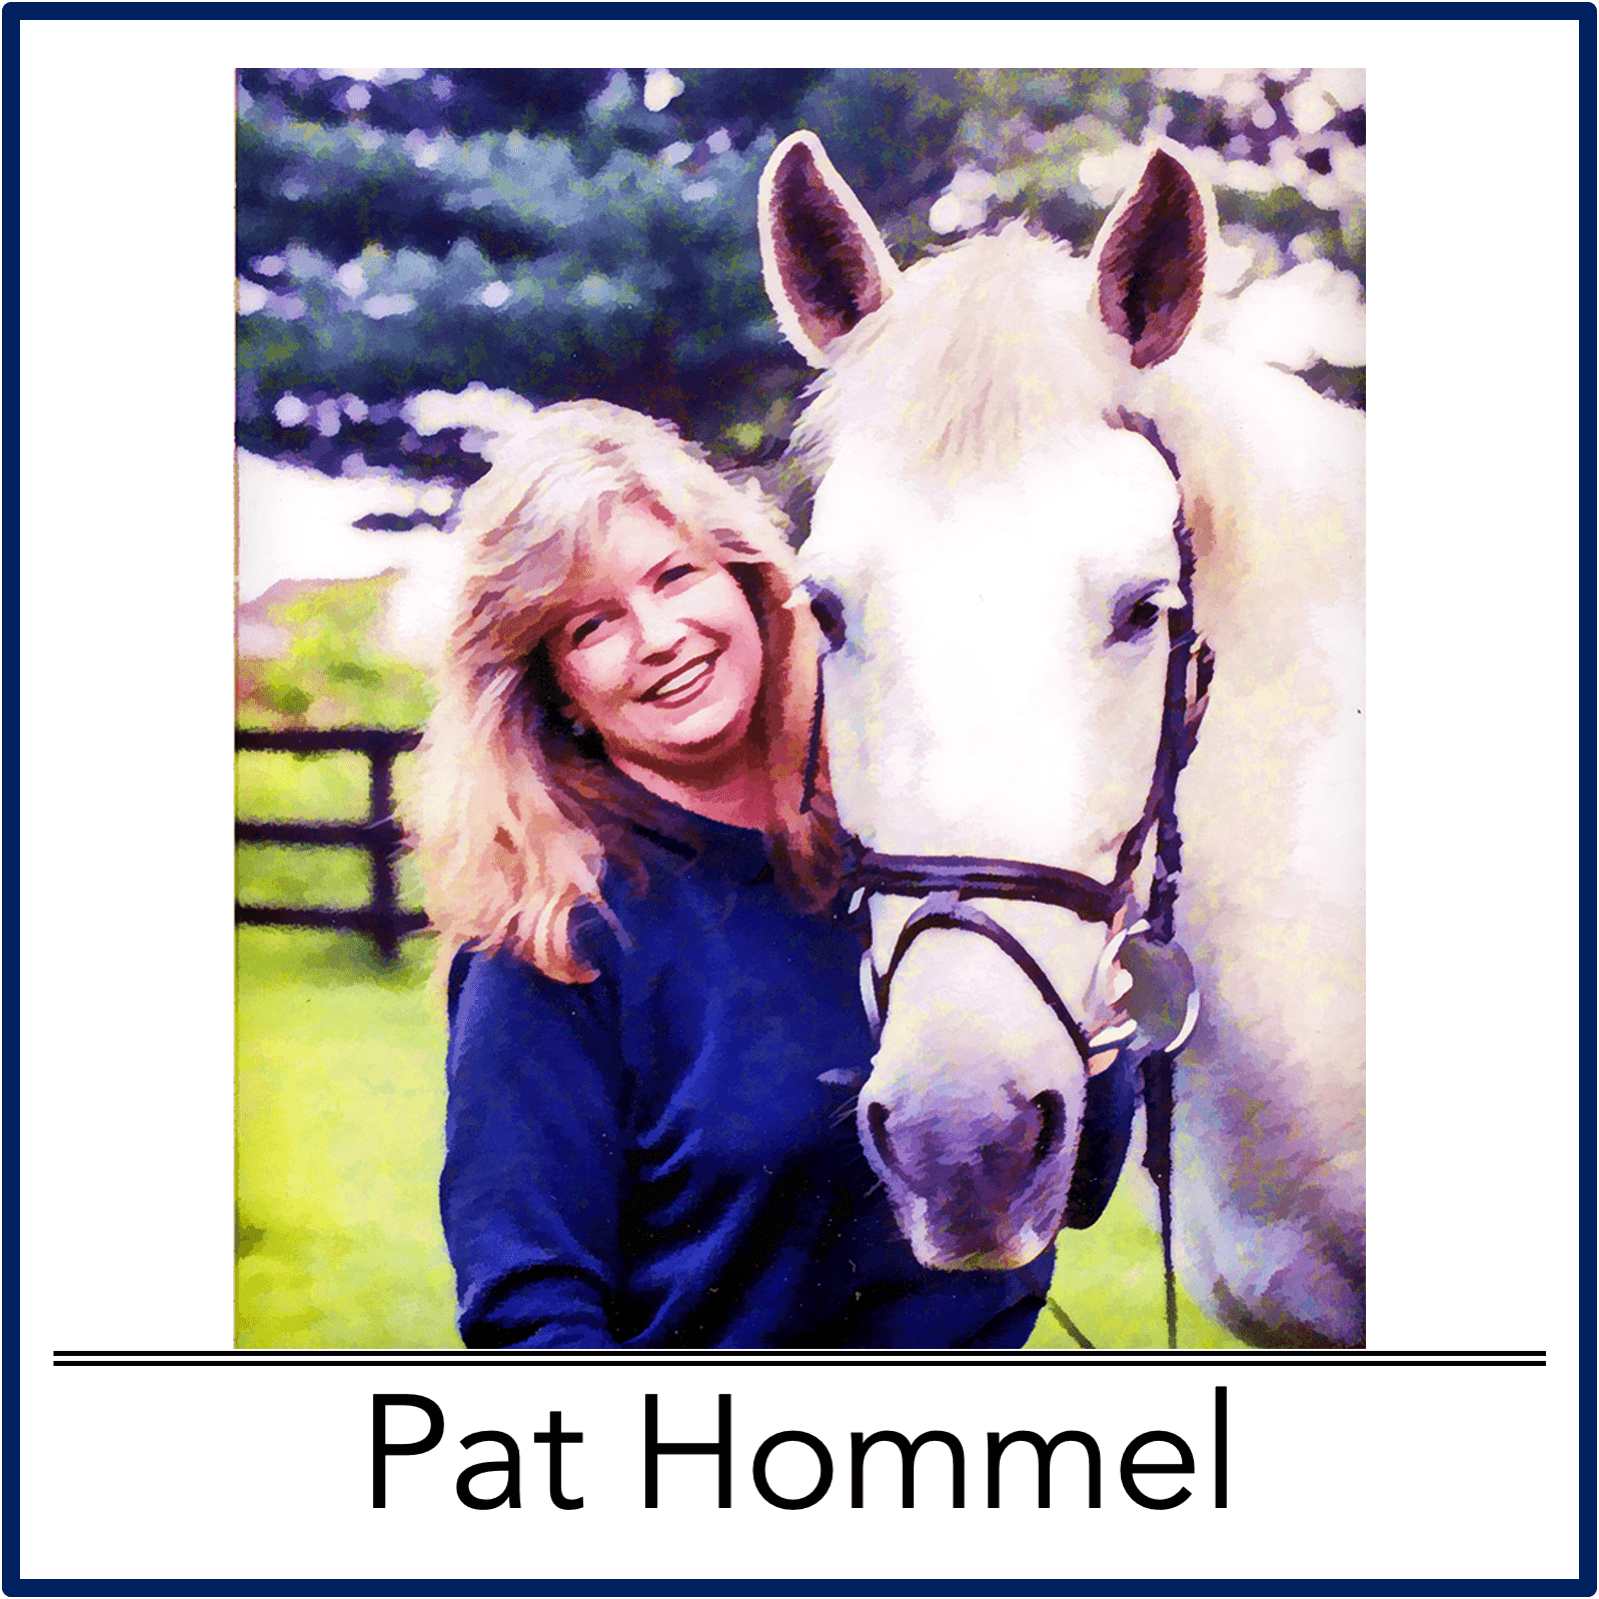 Pat Hommel